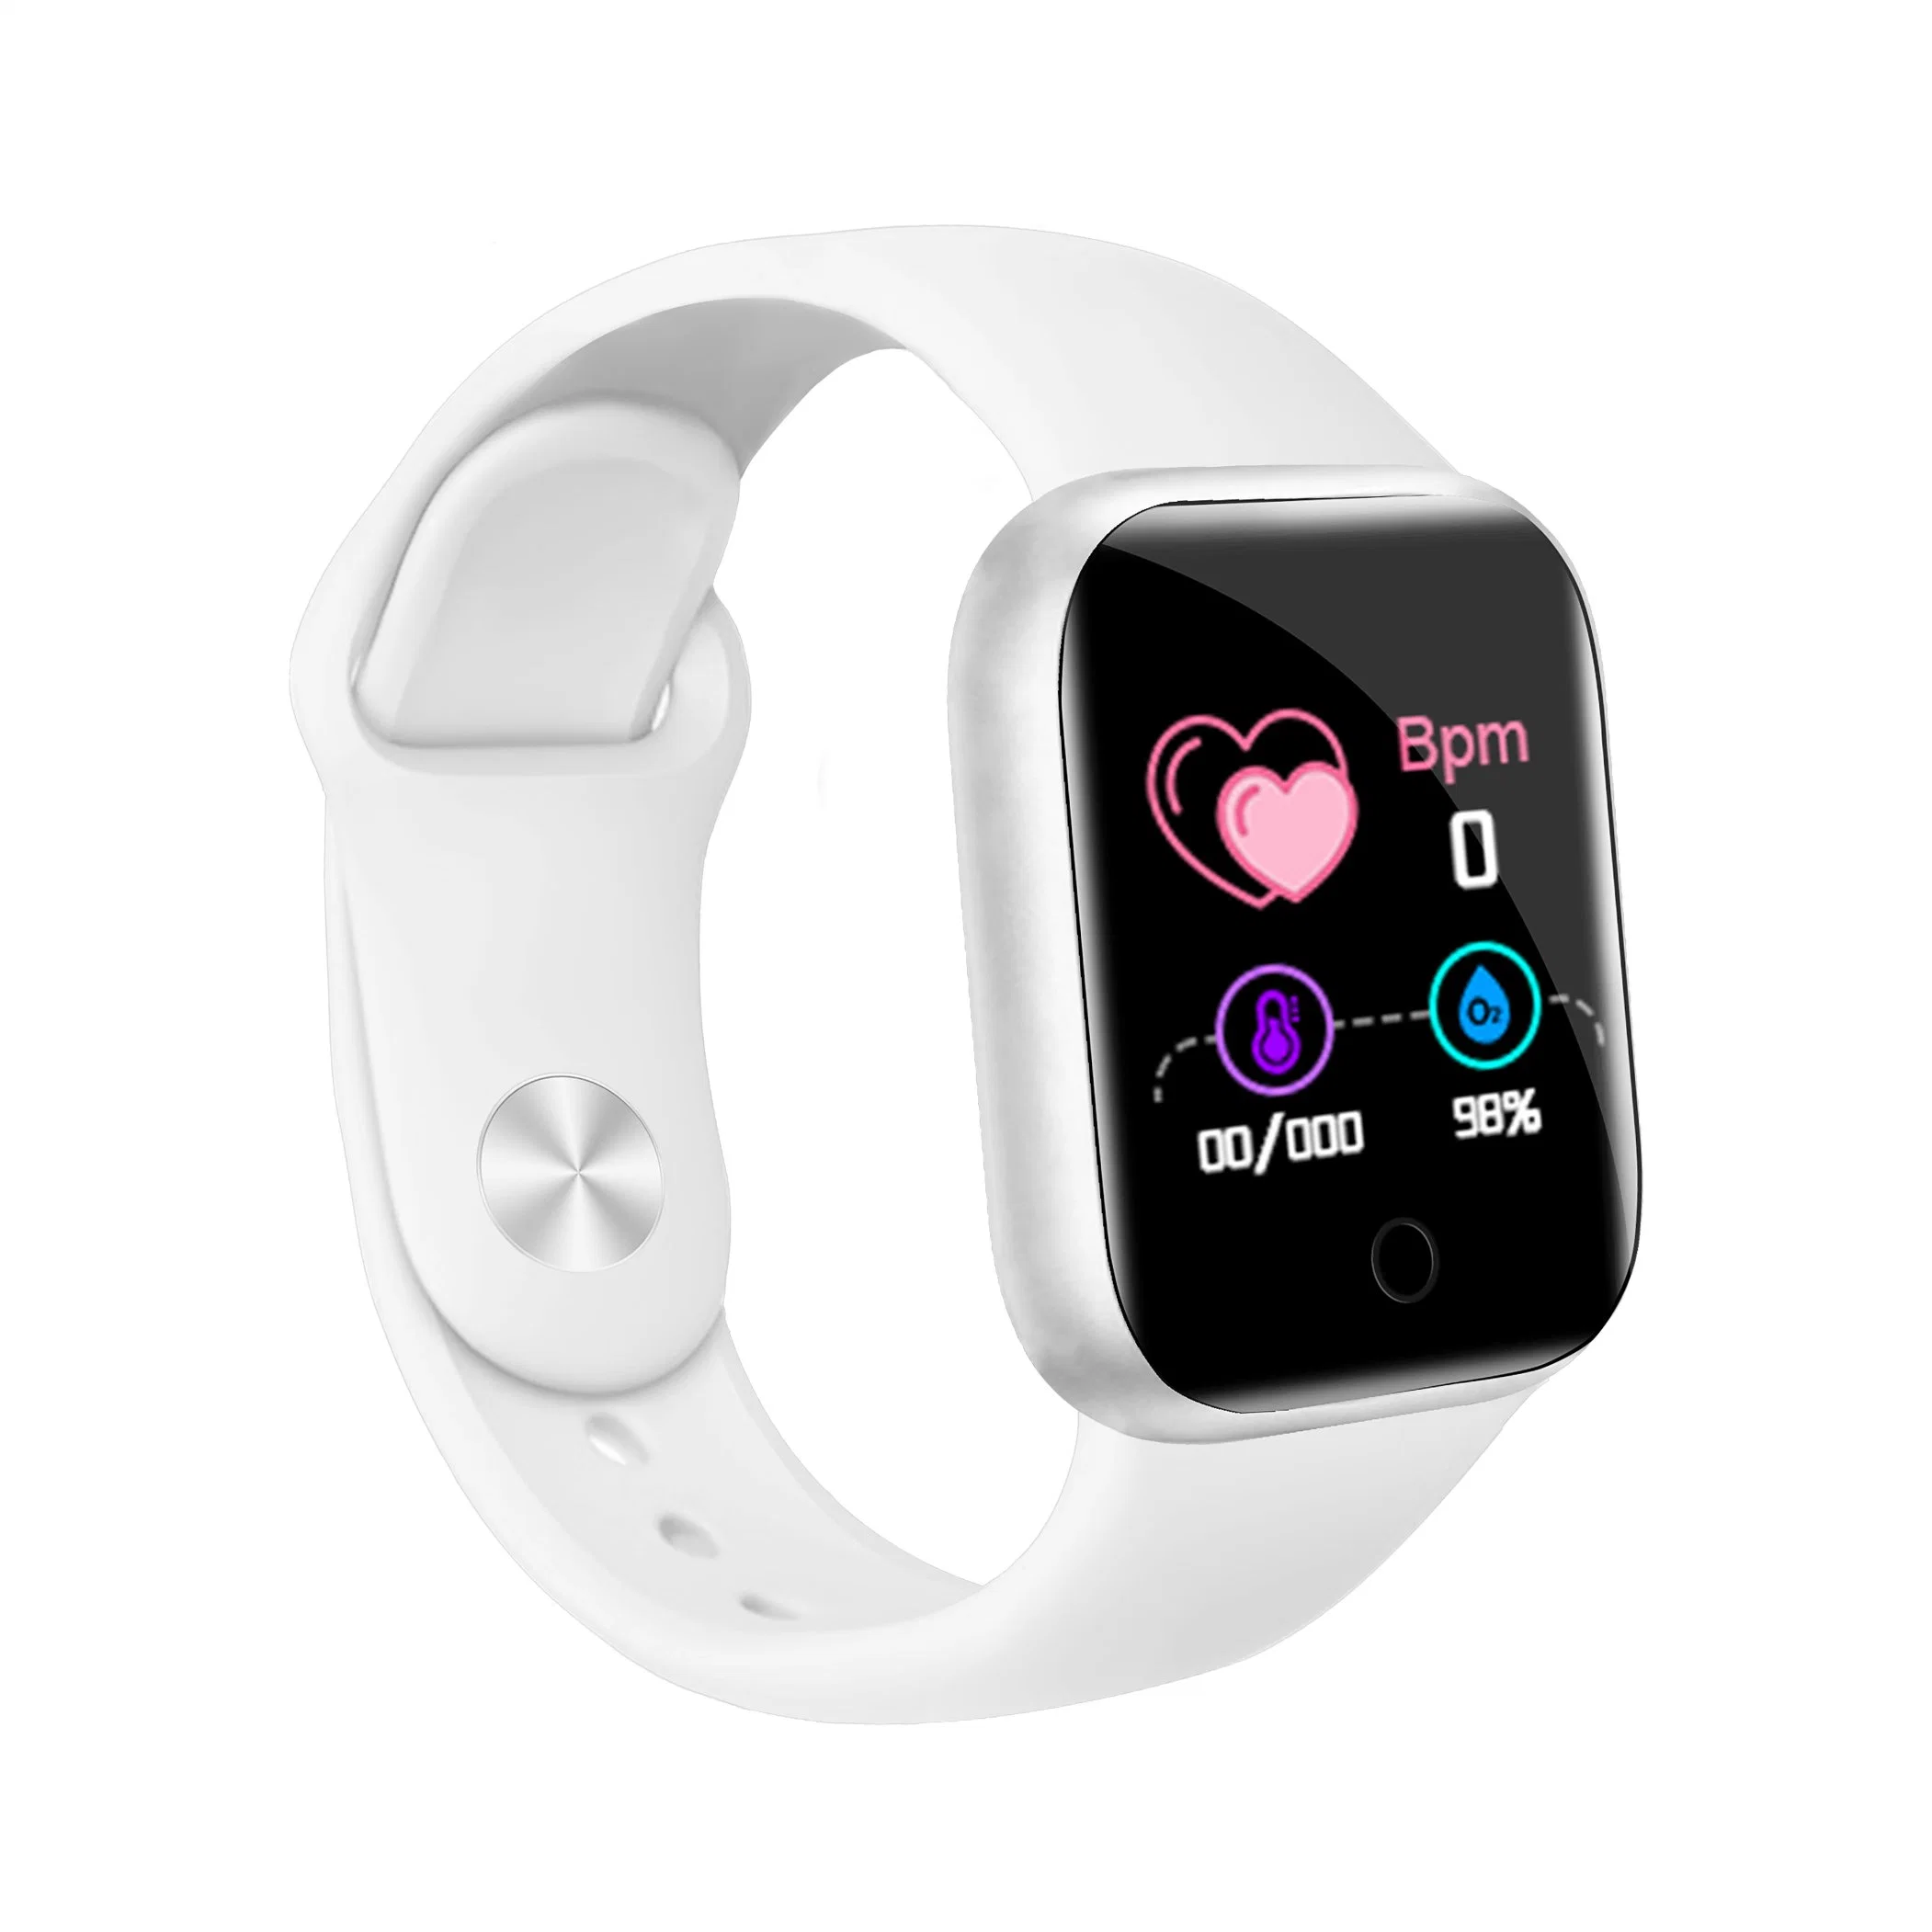 Vente chaude Reloj Watch Intelligent Y68 de la santé Tracker de remise en forme de bracelet D20 Smartwatch Y68s